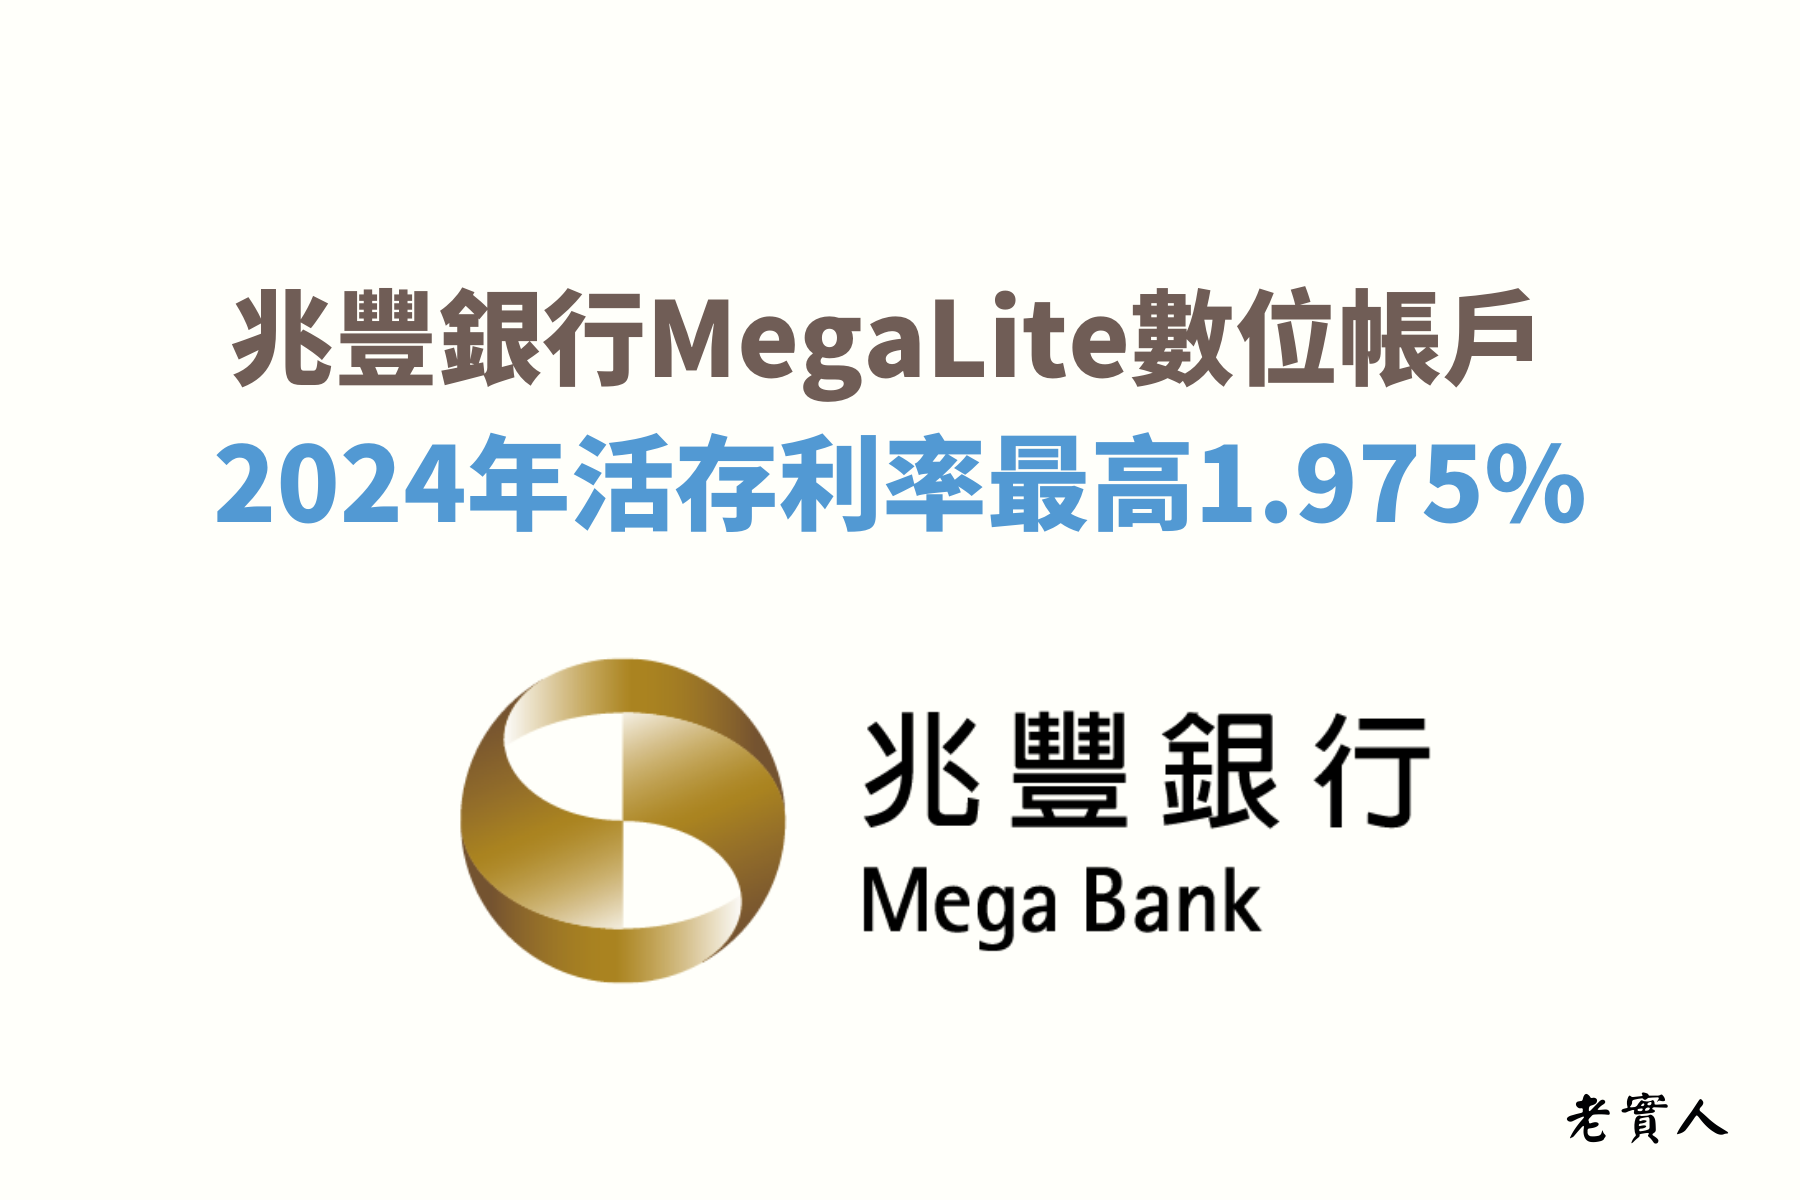 兆豐銀行的MegaLite數位帳戶除了有10萬元內1.975%的台幣高利率活存，還有提供外幣活存利率優惠，以及18種貨幣的24小時線上換匯，還可以機場提領，如果你比較常出國，那你一定要了解一下。